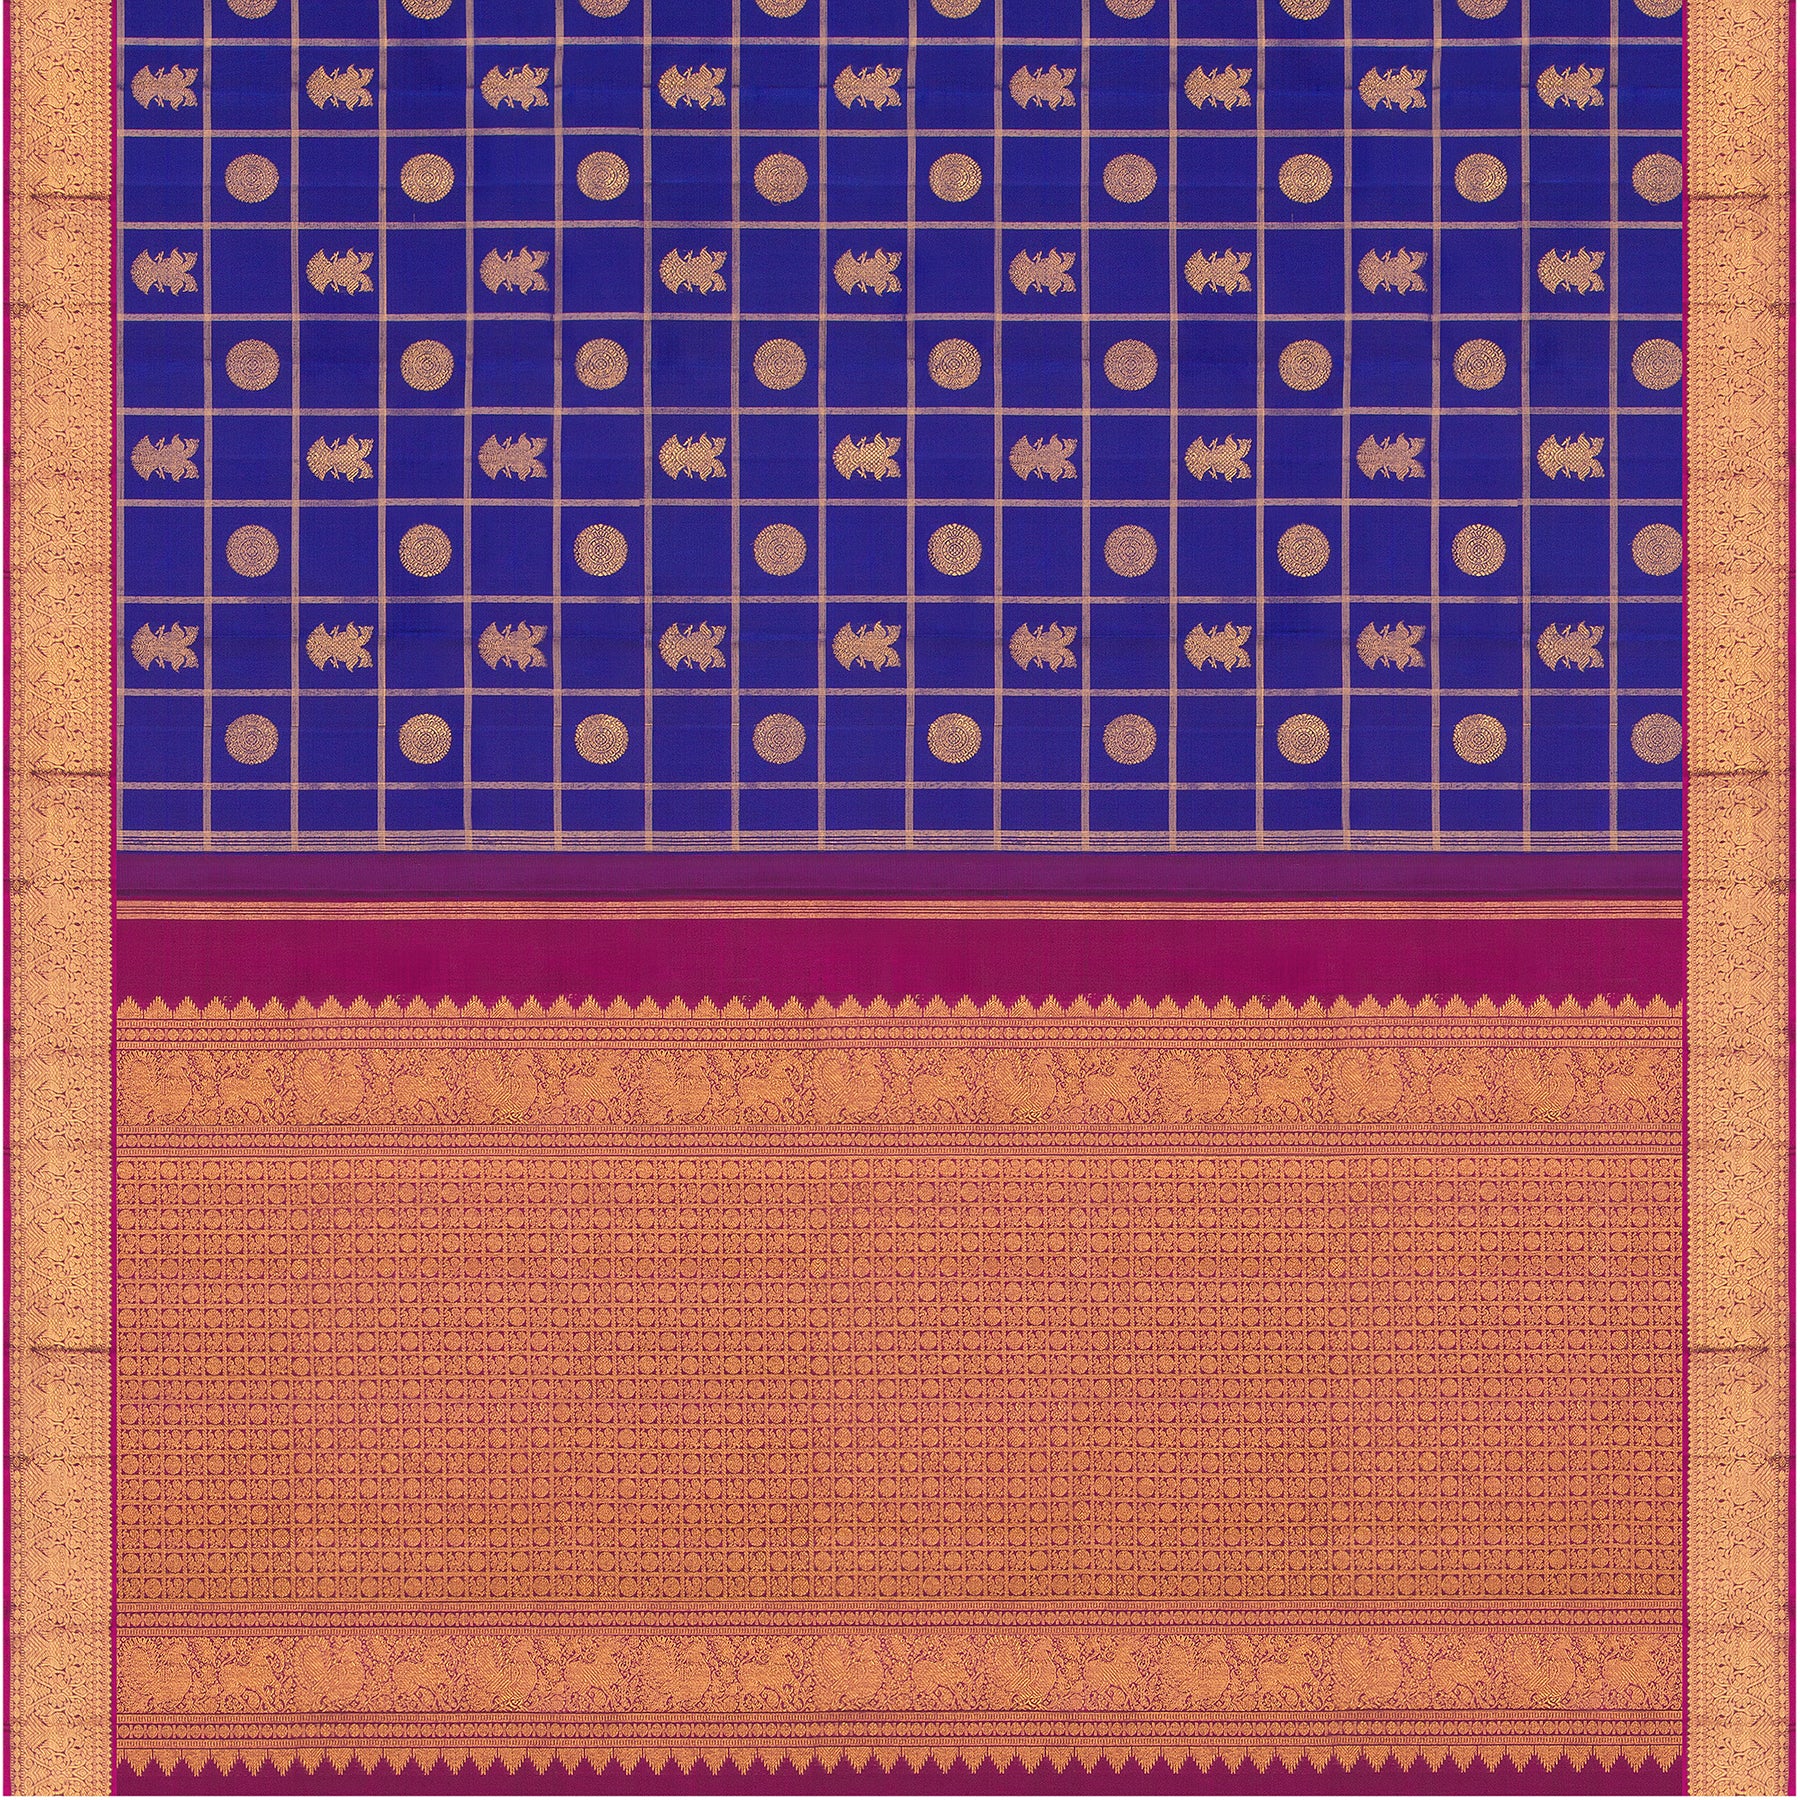 Kanakavalli Kanjivaram Silk Sari 23-110-HS001-02981 - Full View